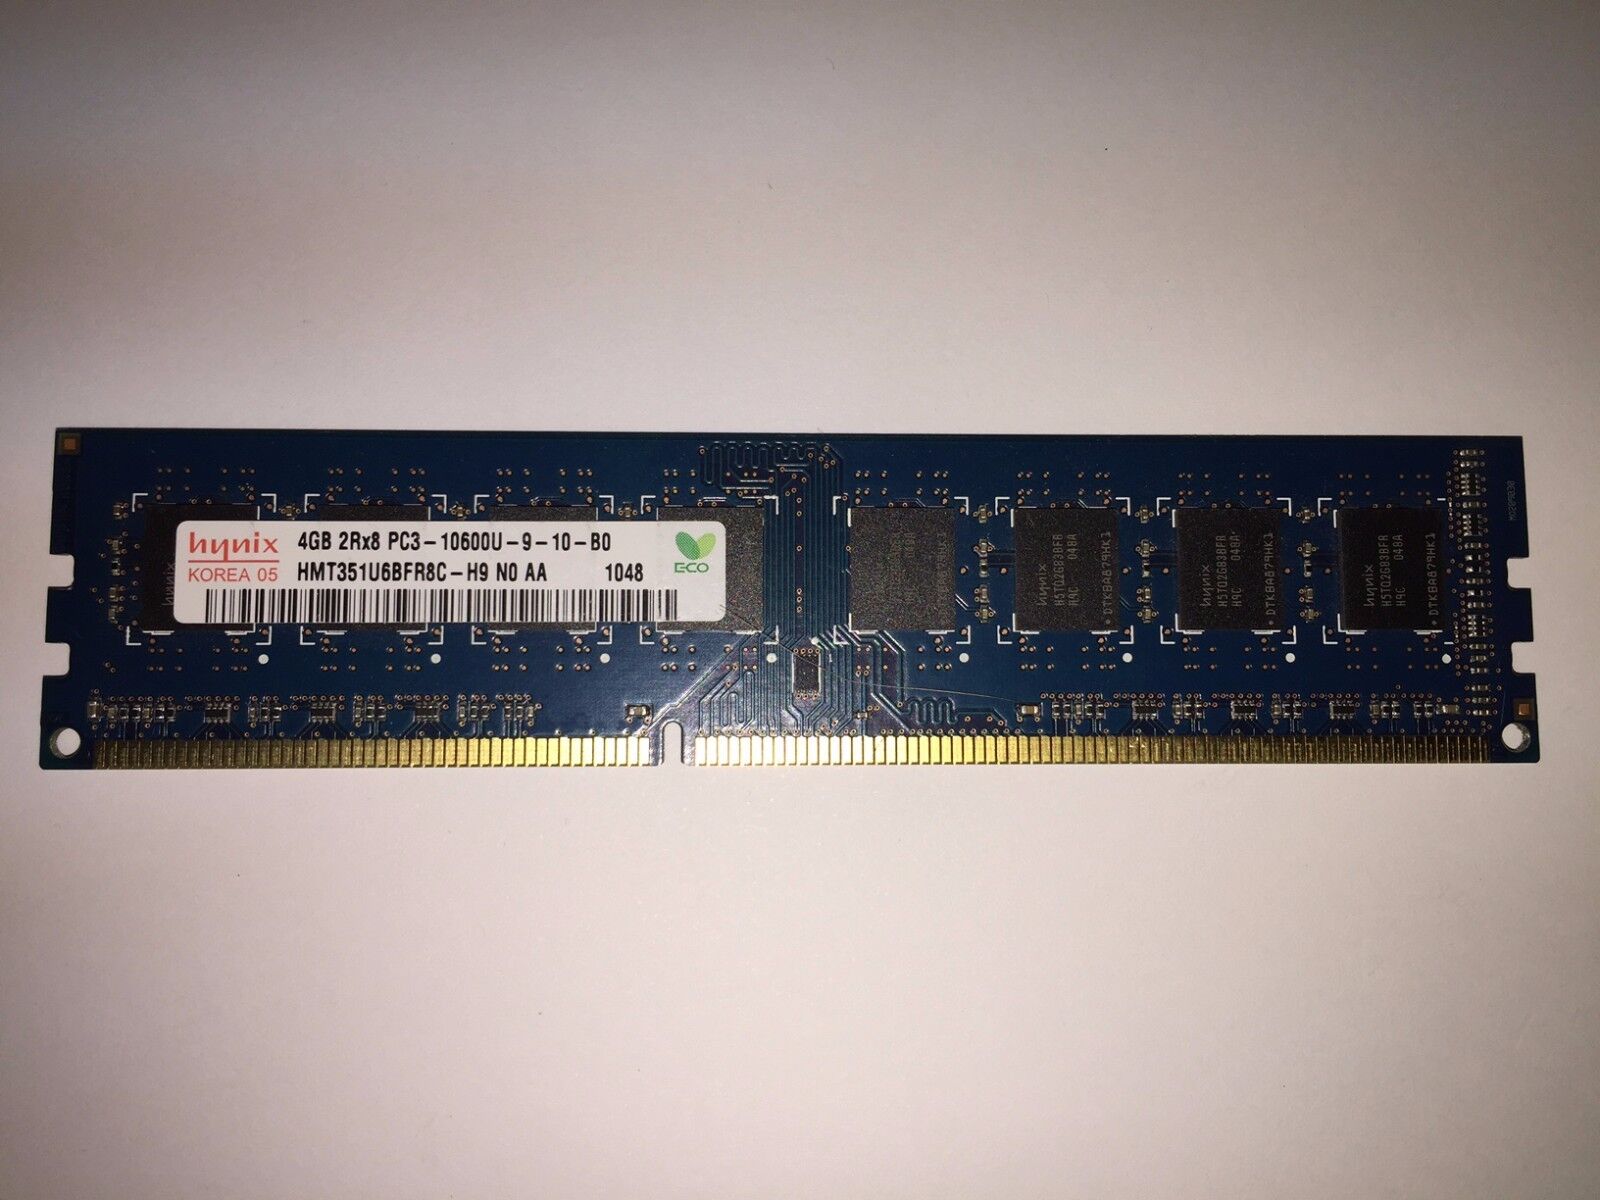 Hynix HMT351U6BFR8C-H9 4GB UBDIMM 1333 MHz PC3-10600U DDR3 SDRAM Memory TESTED